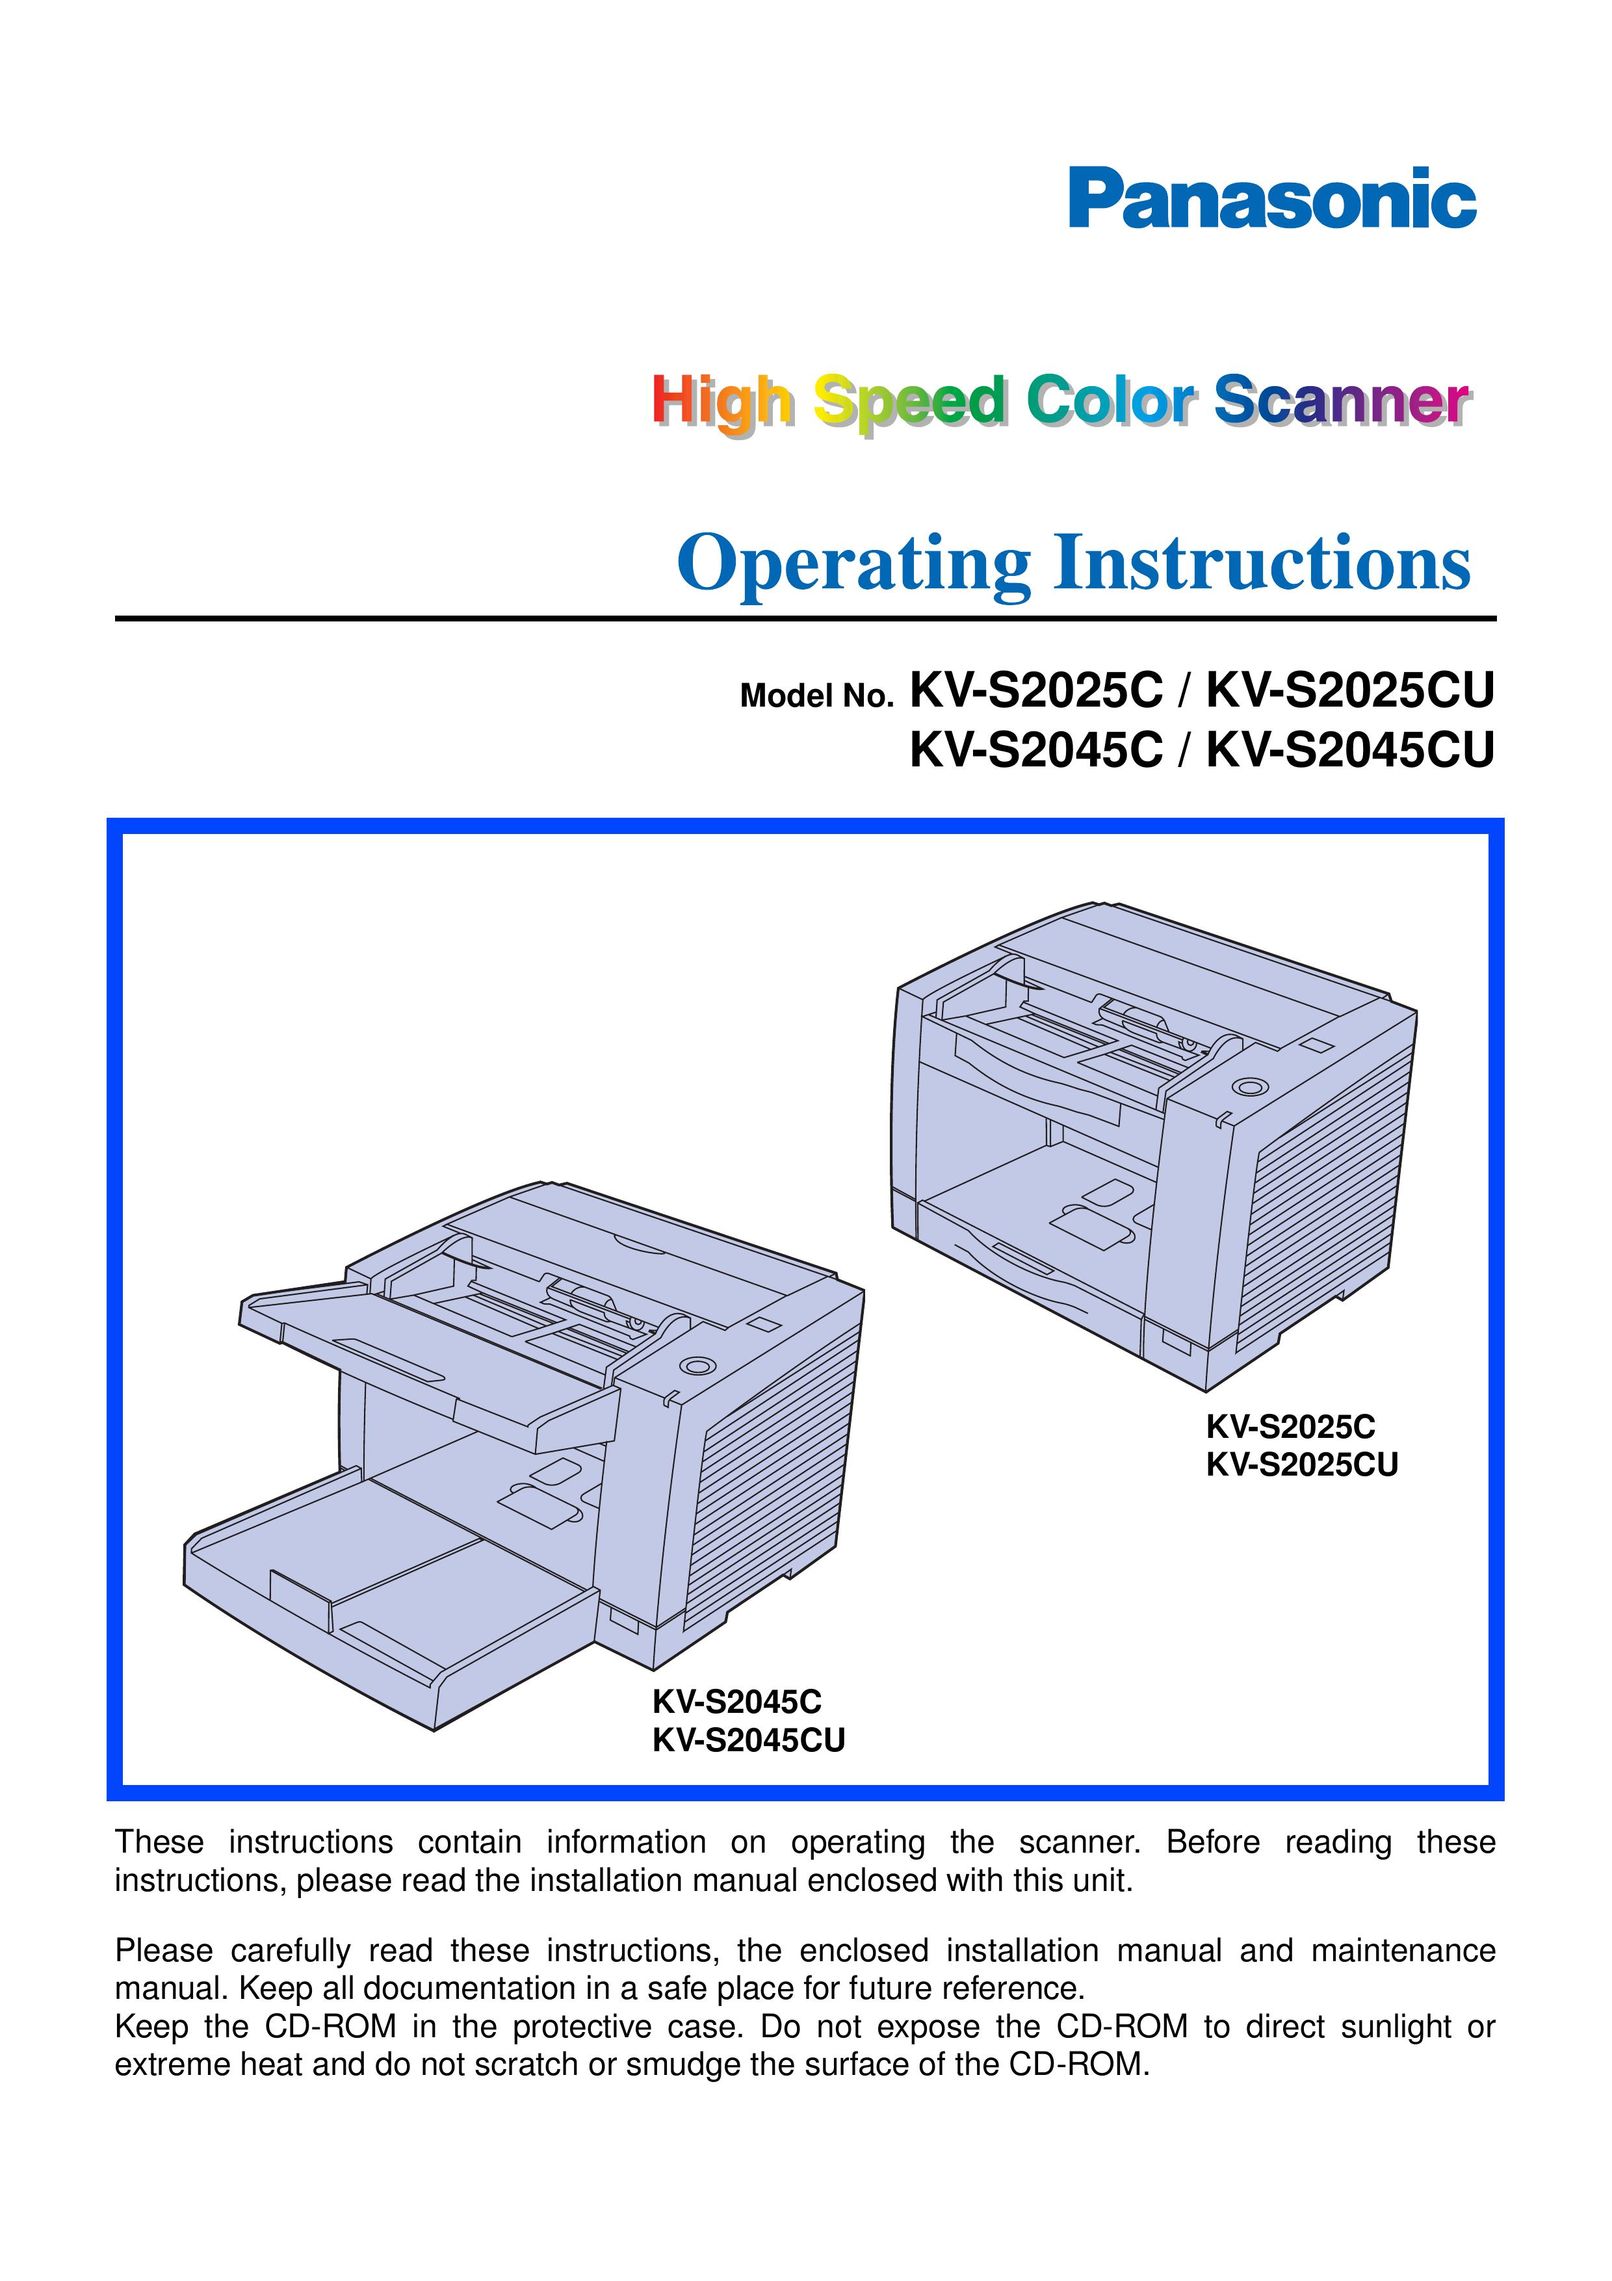 Panasonic KV-S2045CU Scanner User Manual